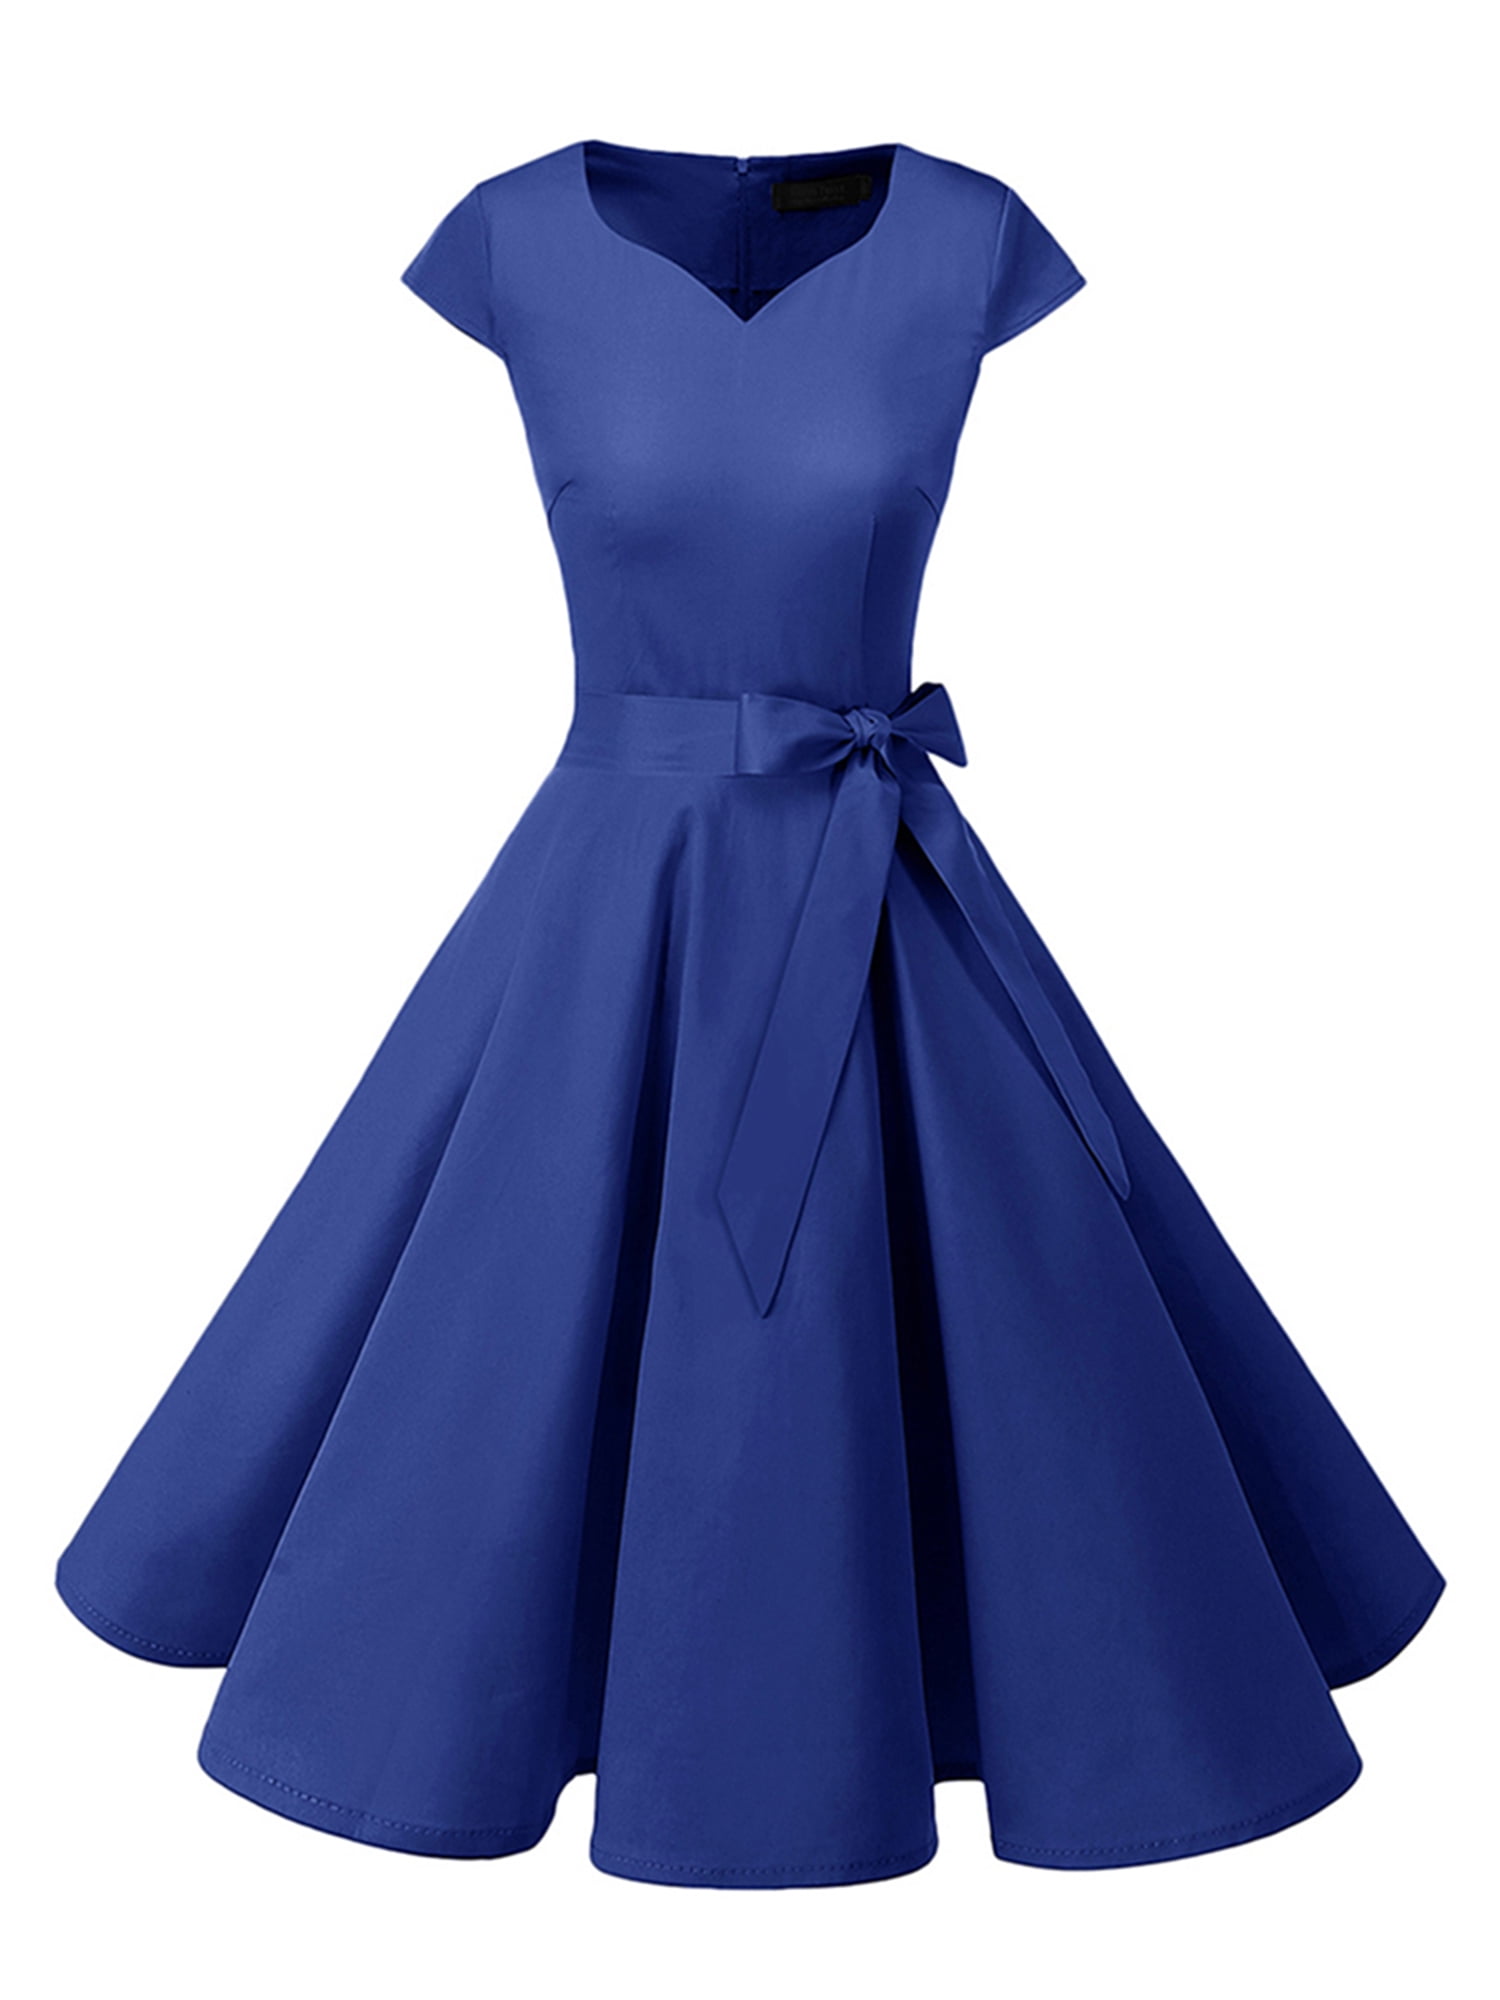 Market In The Box Women's 50s Vintage Dress Cap Sleeve Rockabilly Swing ...